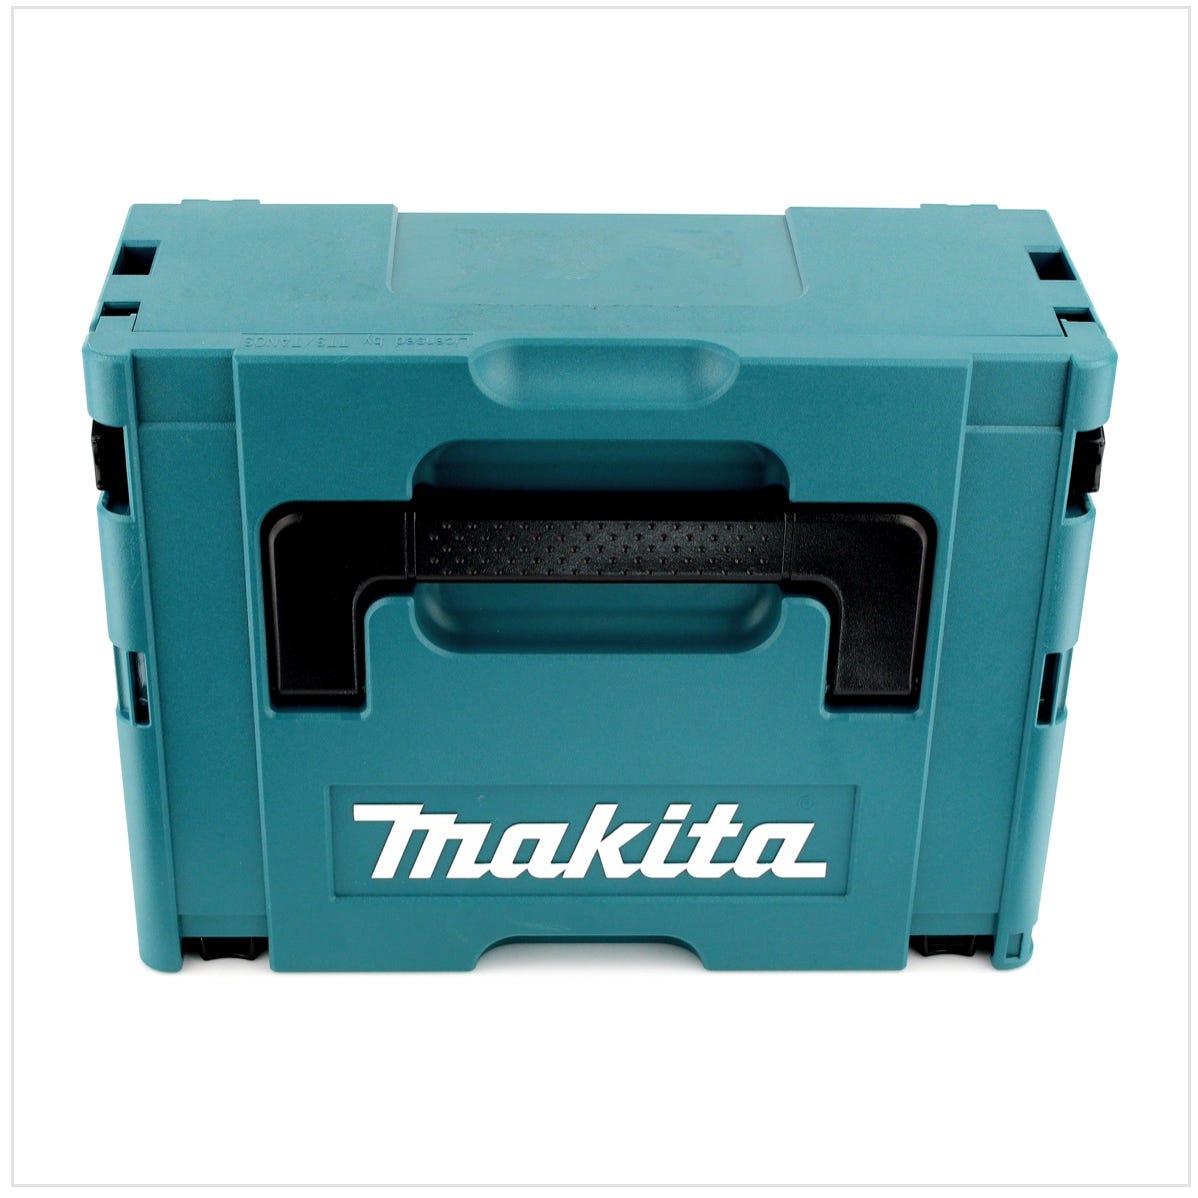 Makita DJV 180 M1J Scie sauteuse sans fil 18V + 1x Batterie 4.0Ah + Makpac - sans chargeur 2